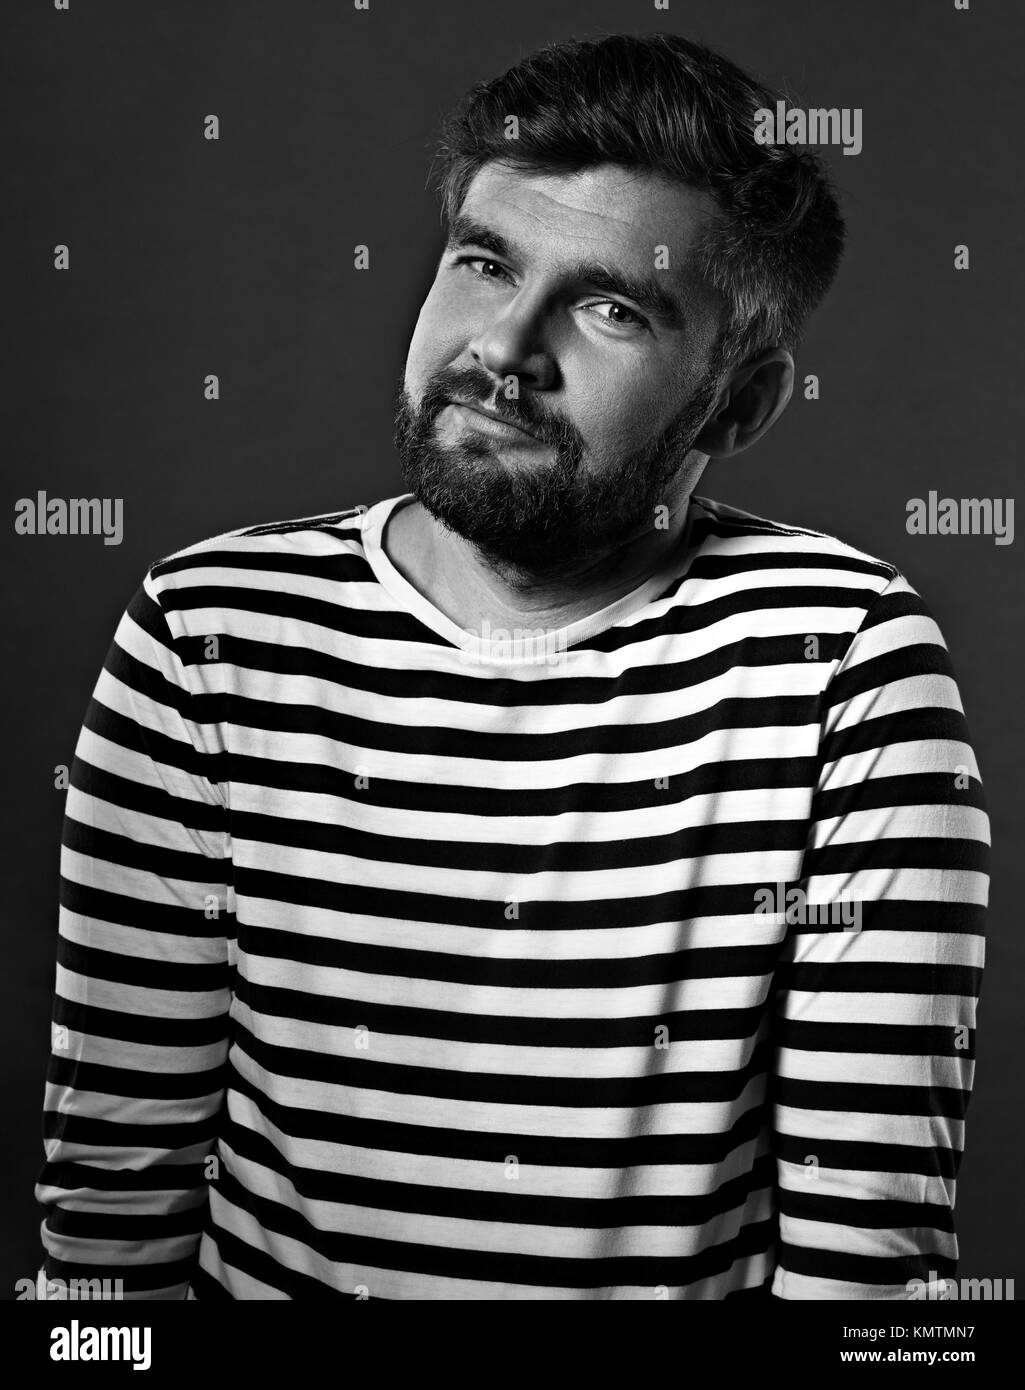 Camisa de rayas blancas y negras fotografías e imágenes de alta resolución  - Alamy